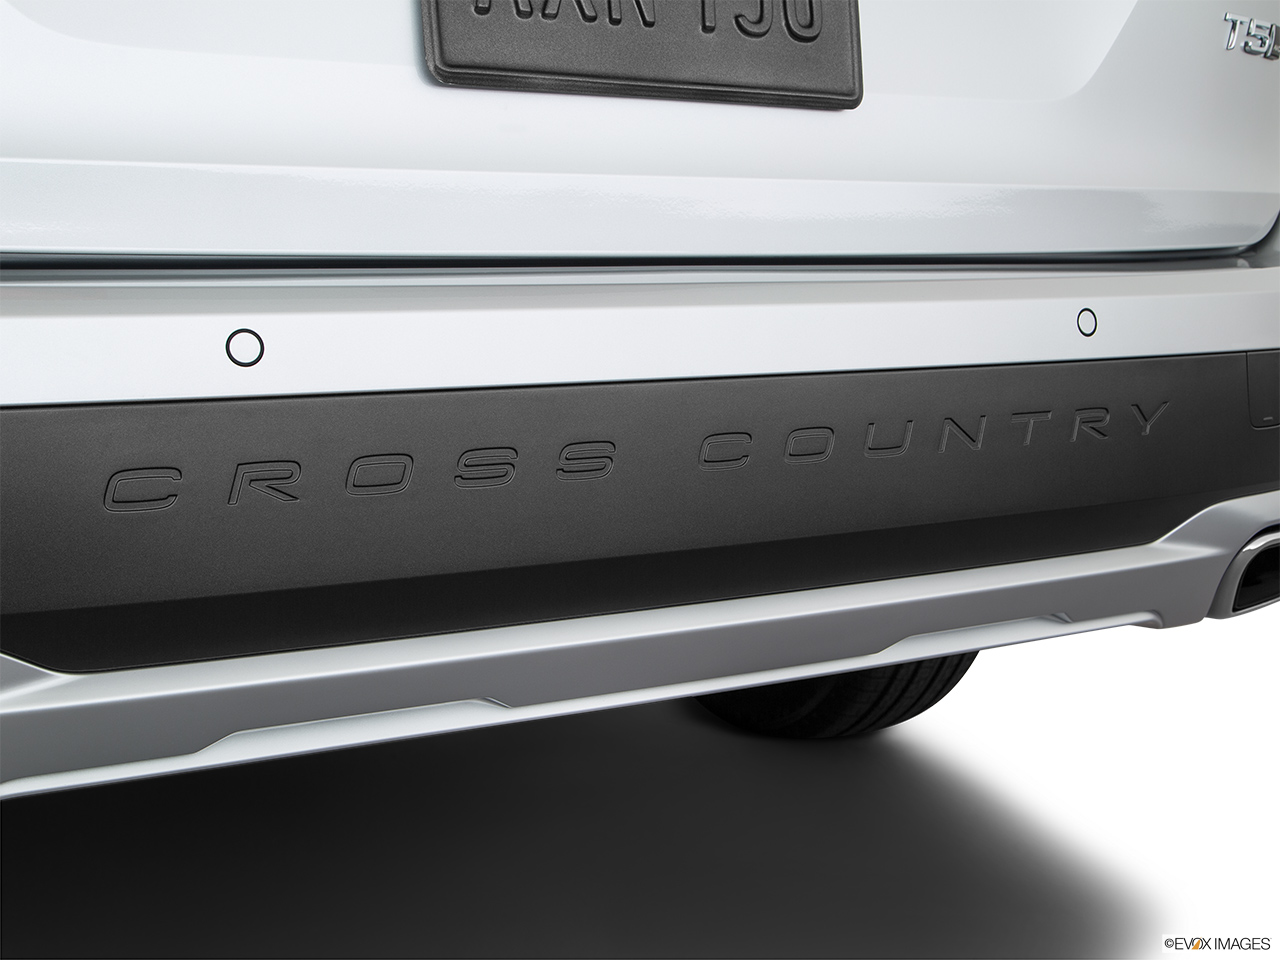 2019 Volvo V90 Cross Country T5 Exterior Bonus Shots (no set spec) 